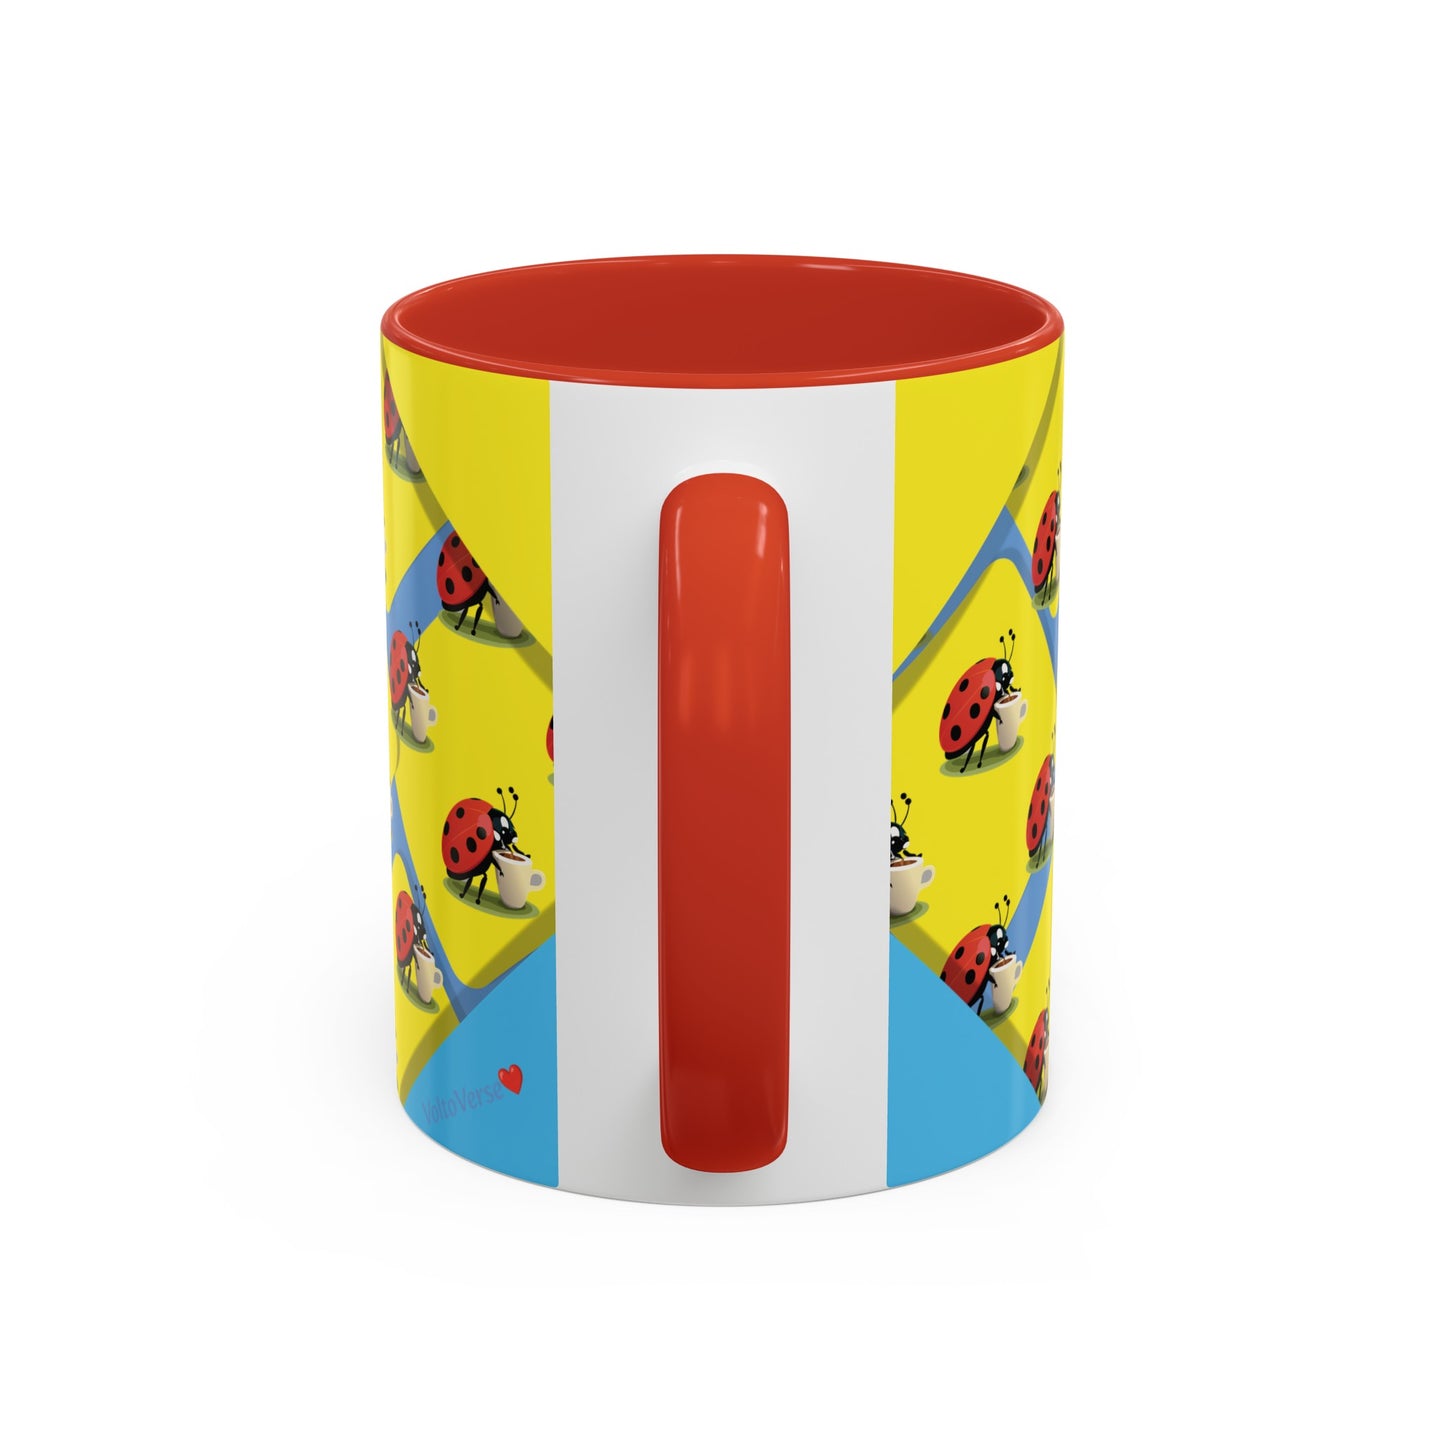 Ladybug Delight Mug